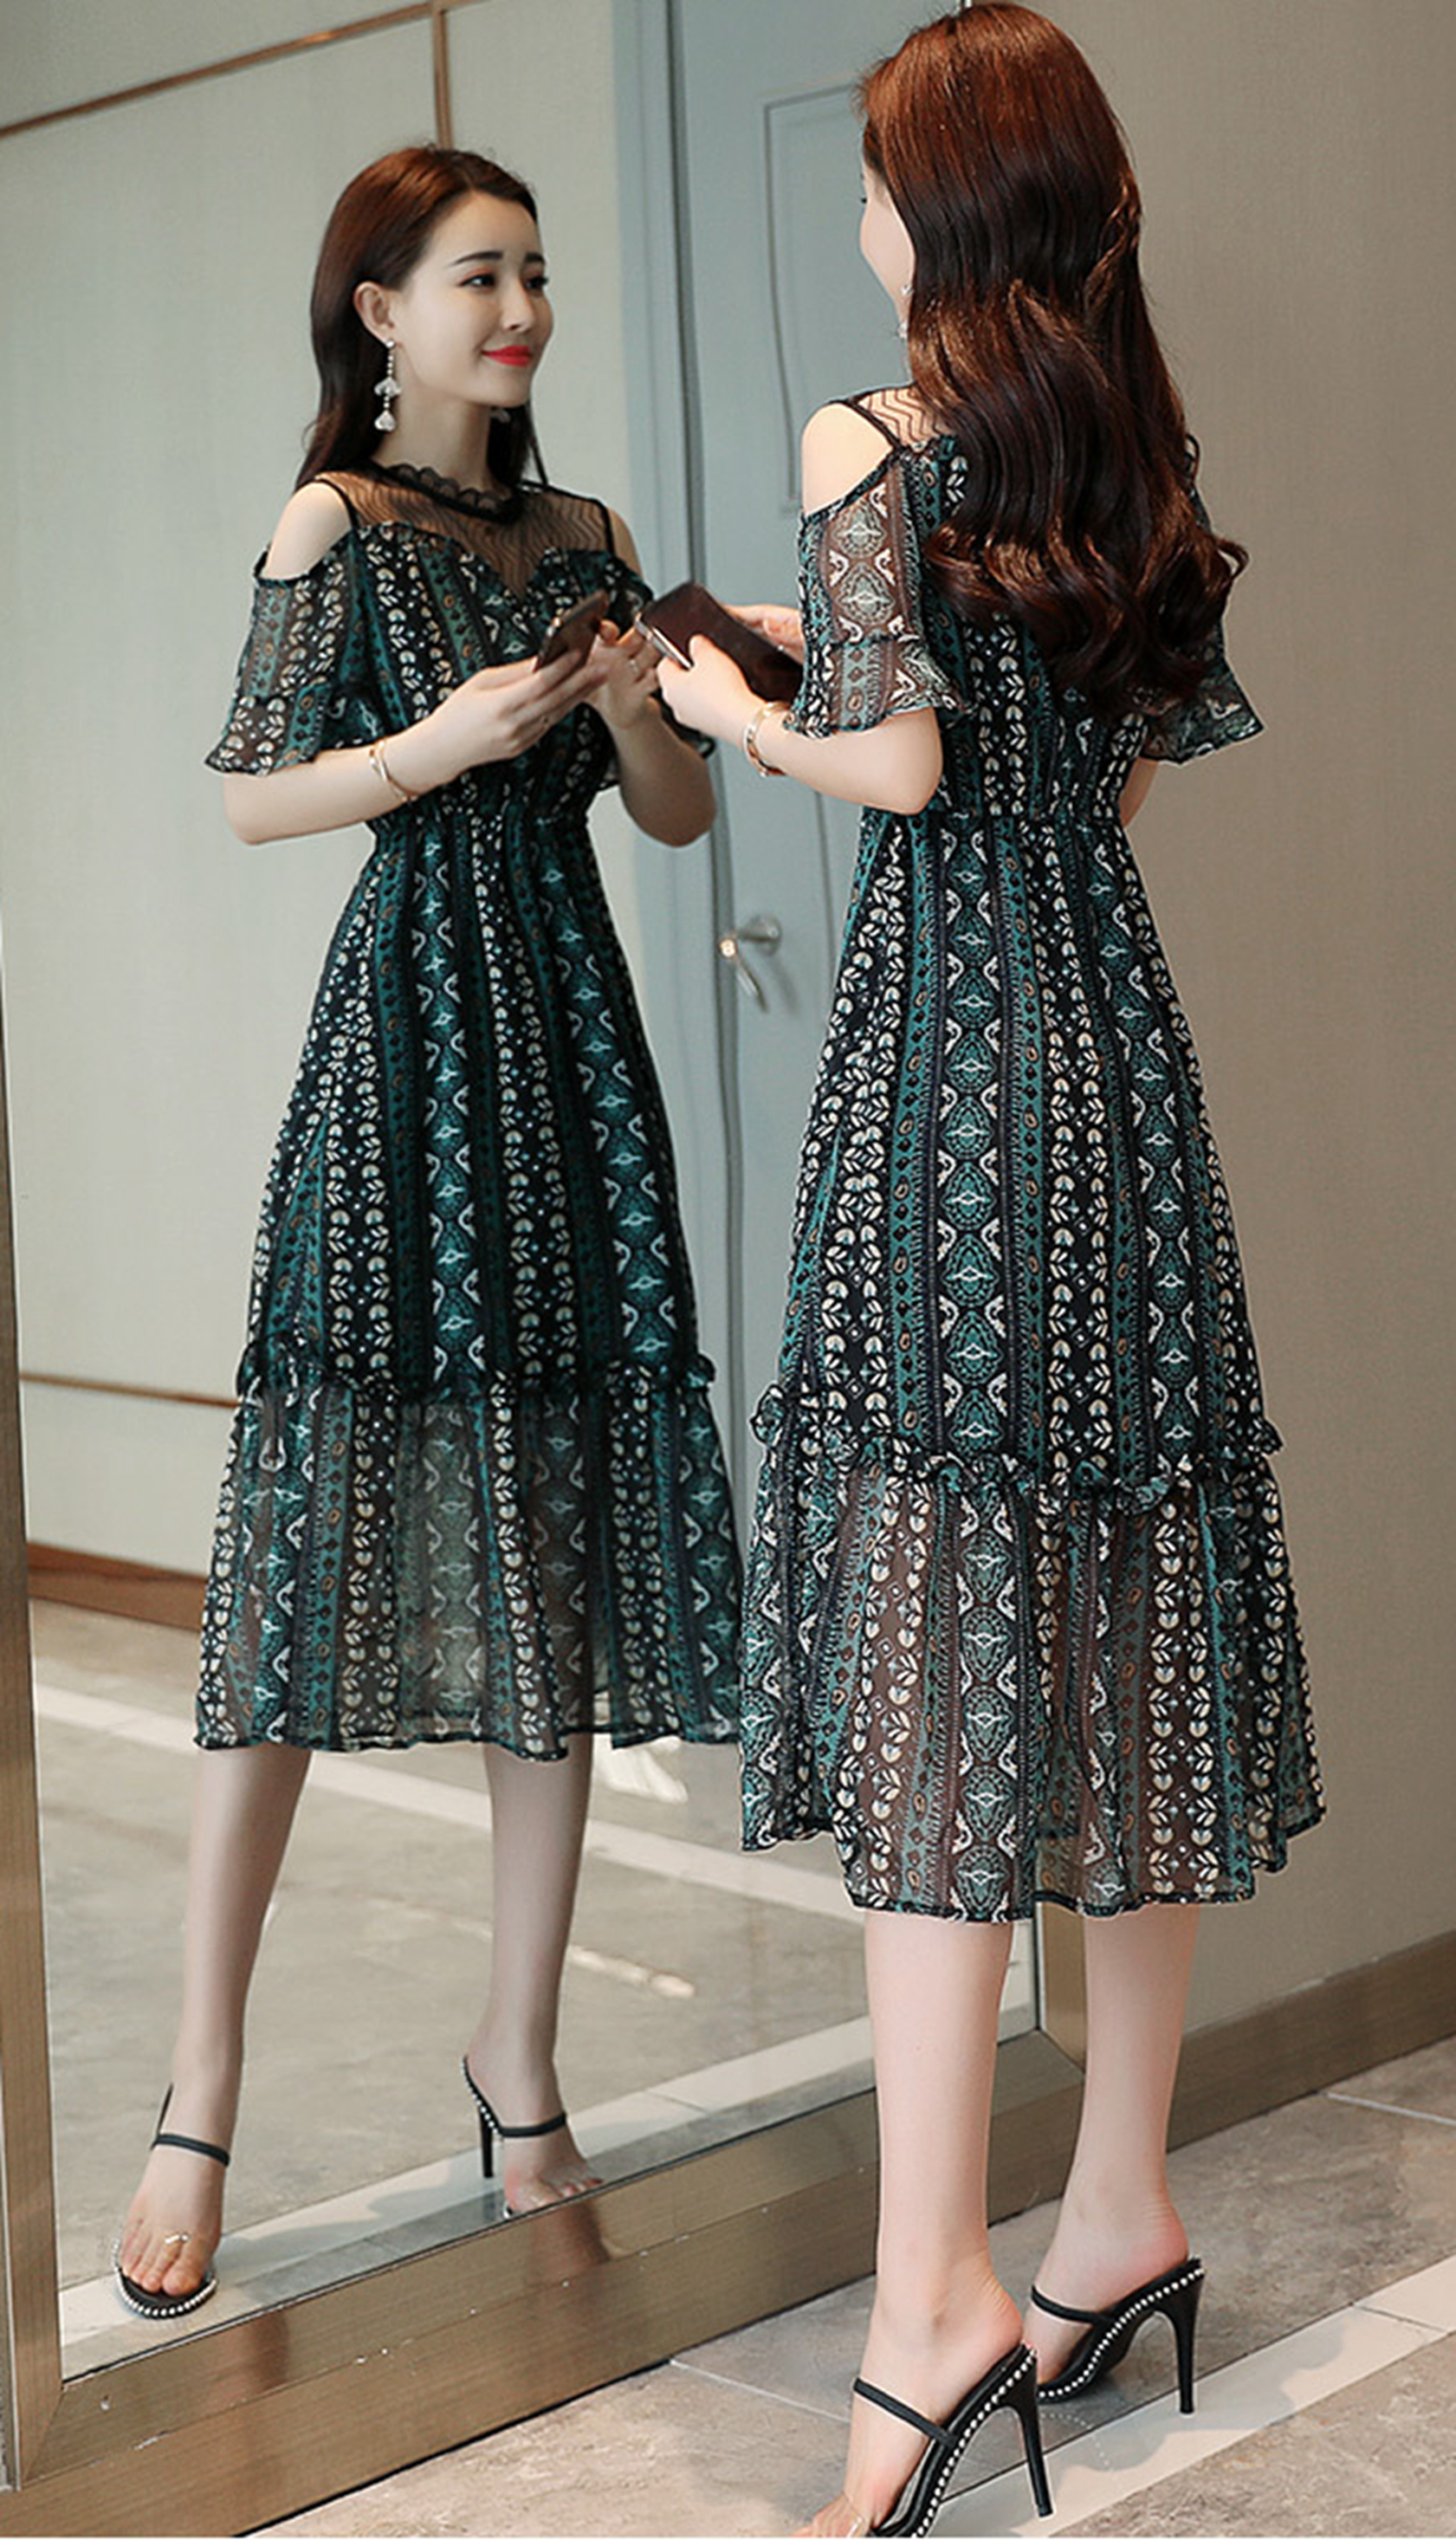 夏新款韩版印花连衣裙，雪纺材质舒适透气，潮流显瘦版型不挑身材